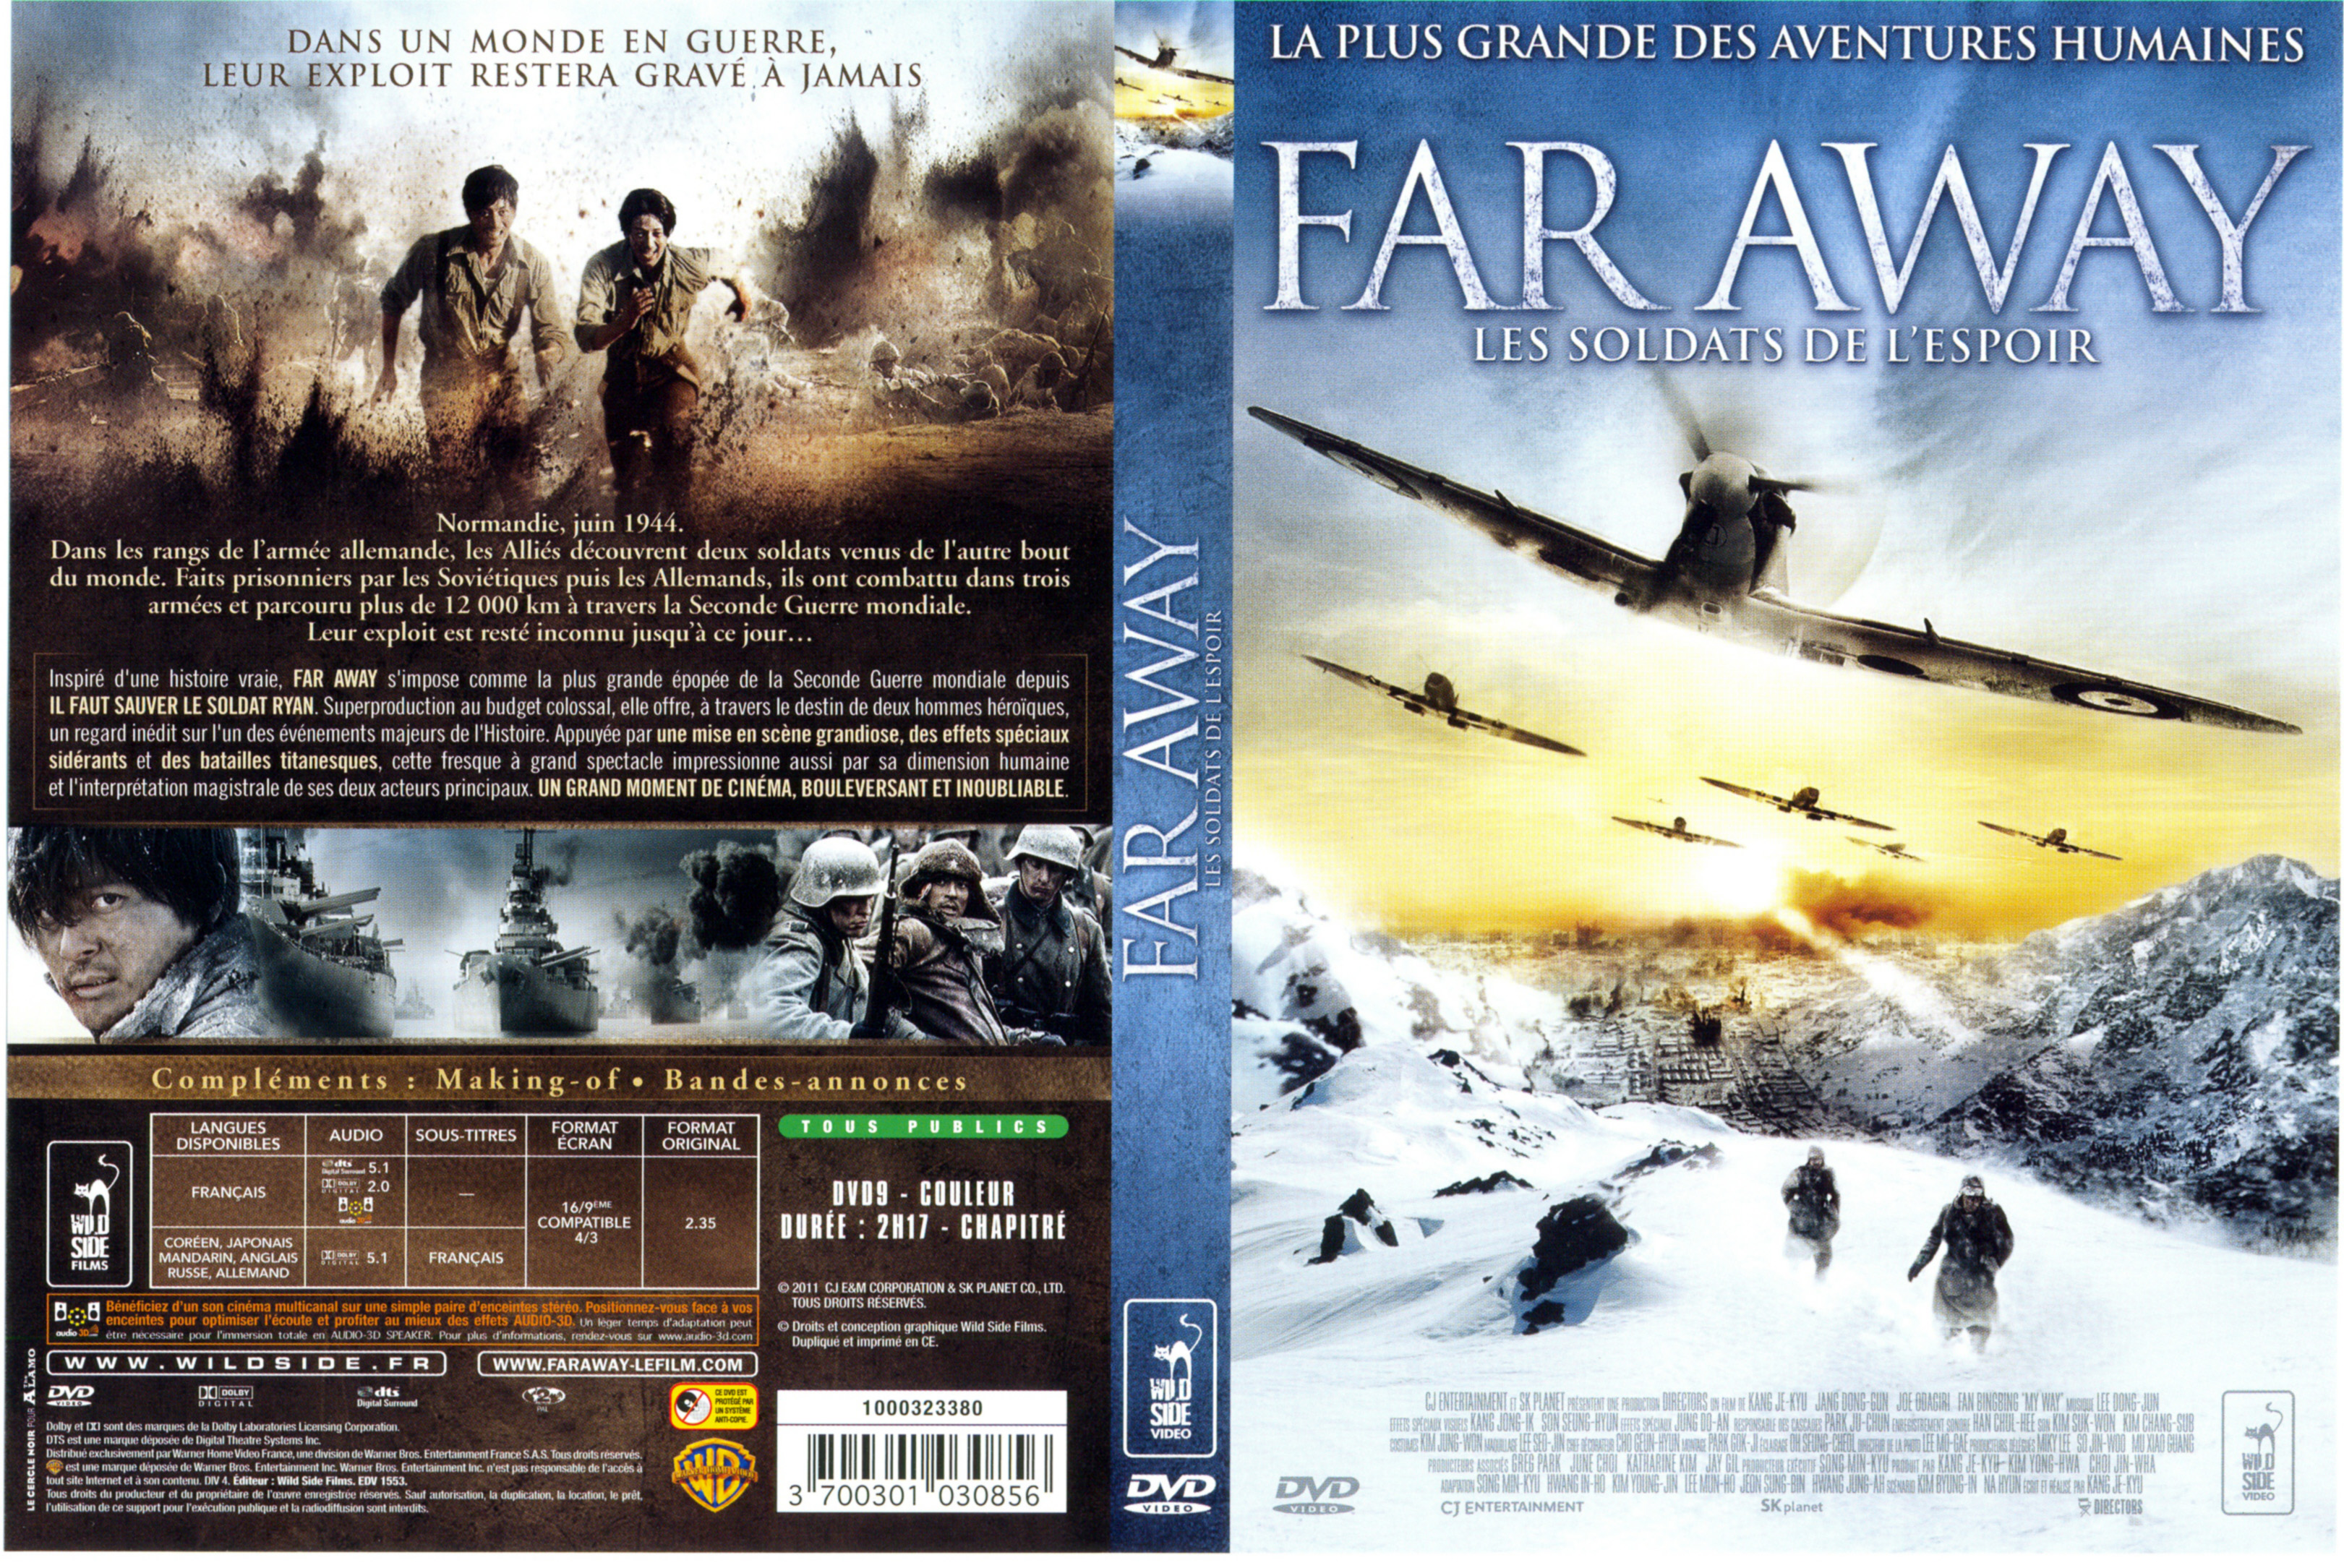 Jaquette DVD Far away